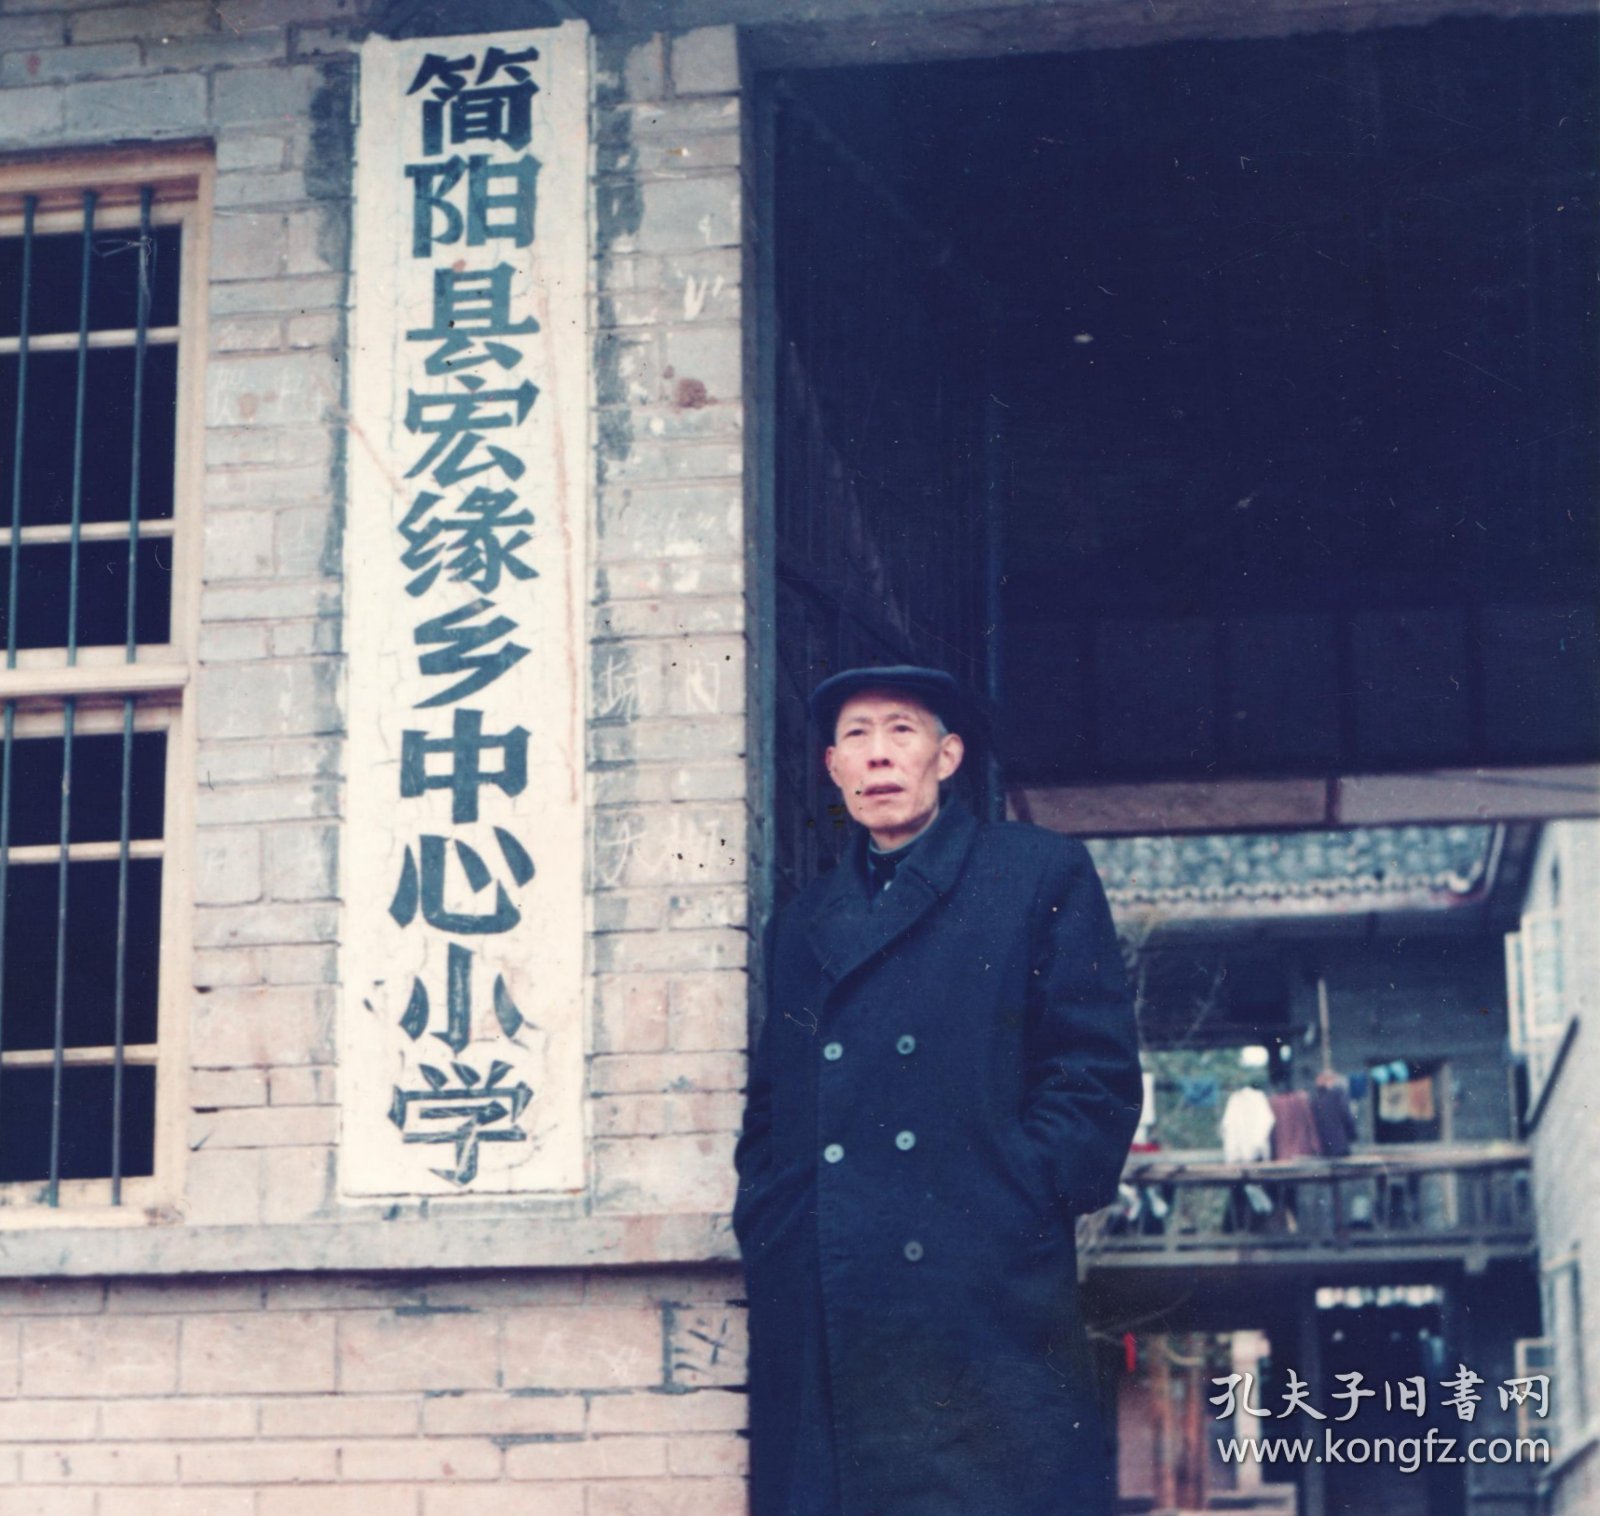 1991年，成都简阳县宏缘乡中心小学大门老照片，背面手书一首诗歌